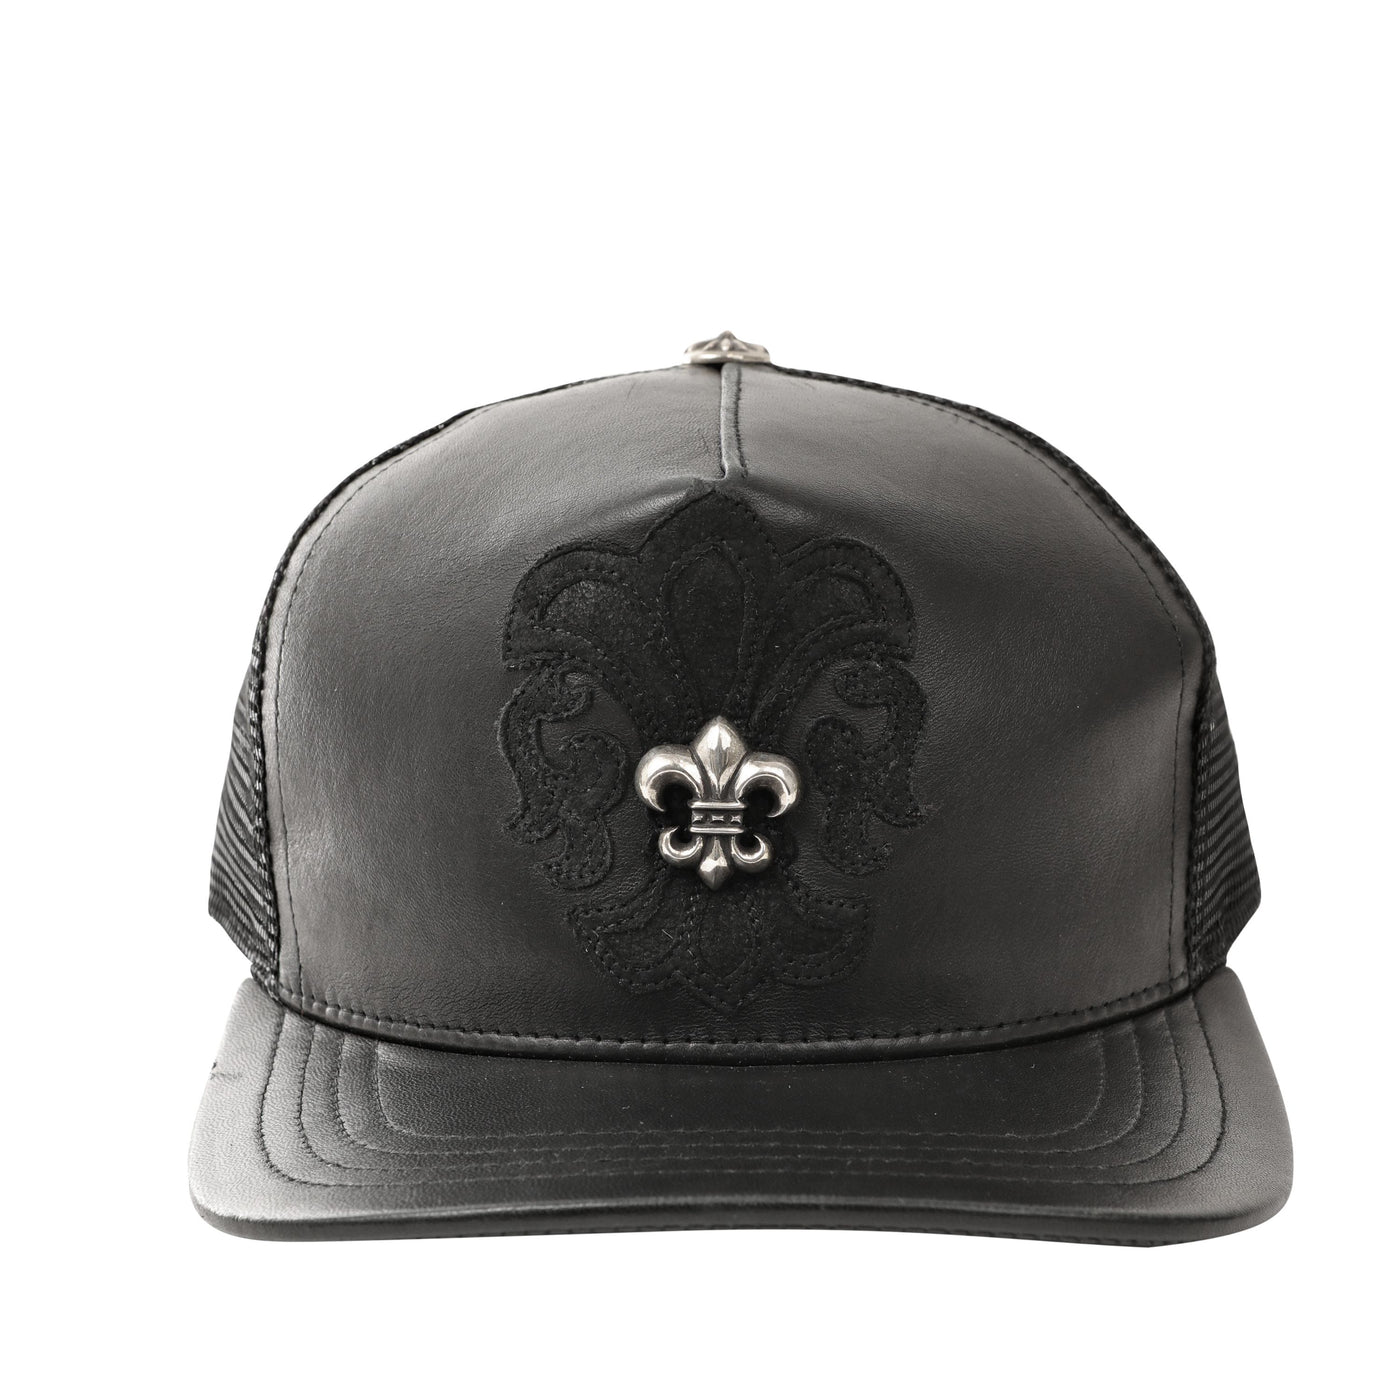 Chrome Hearts Black Leather with Silver Fleur de Lis Hat